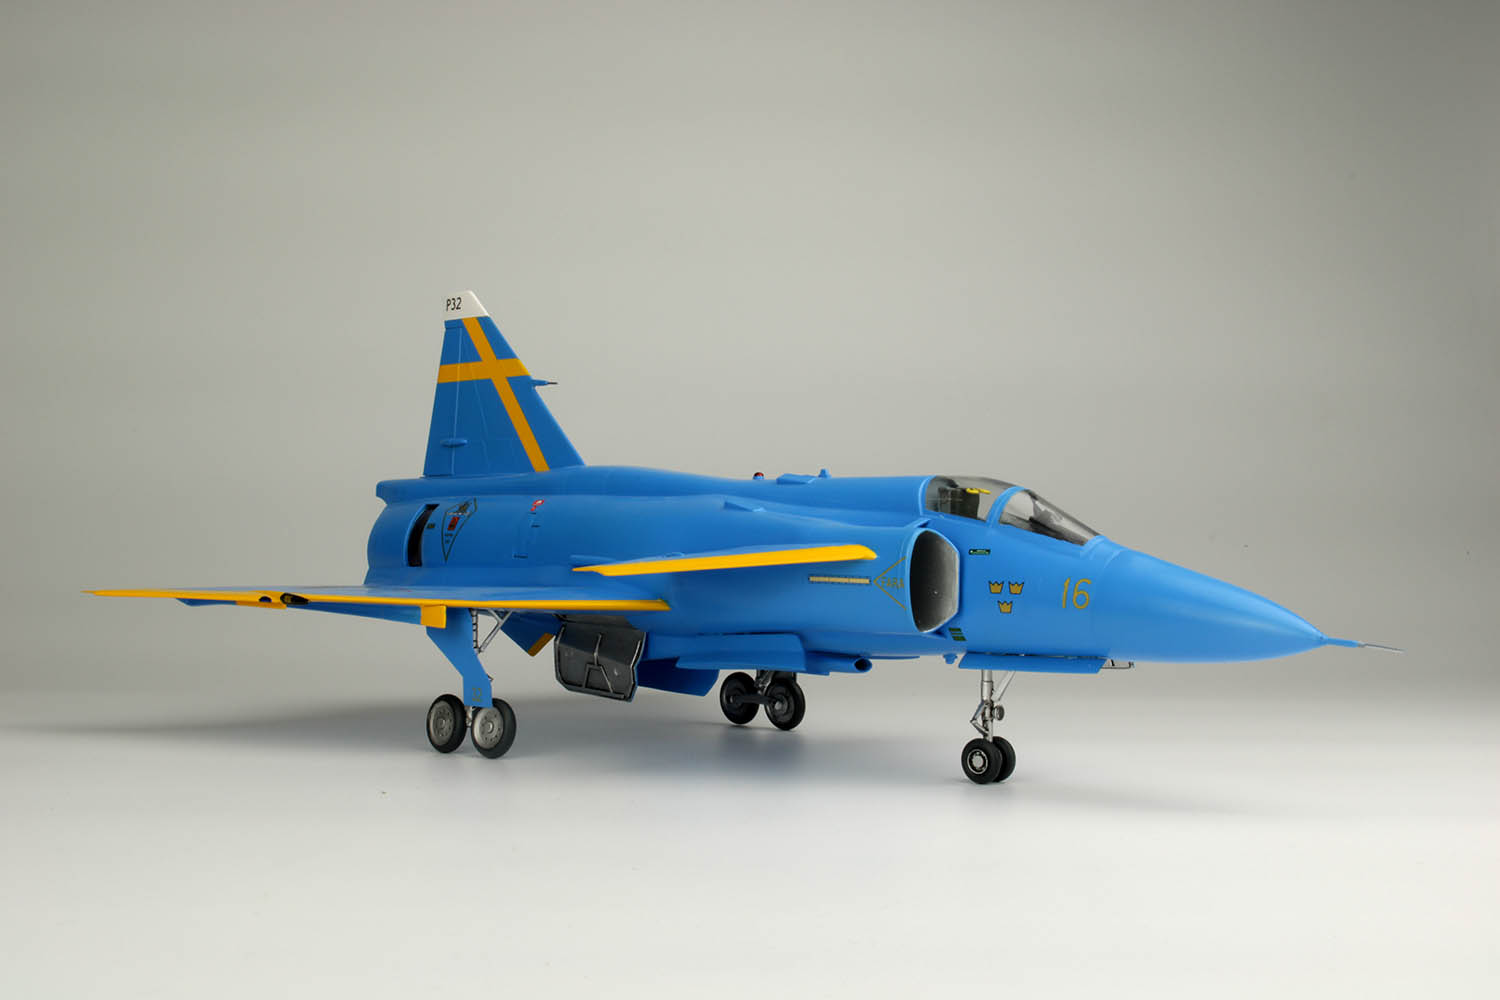 1/48 Swedish Air Force Fighter JA37 Jakt Viggen "Blue Peter"